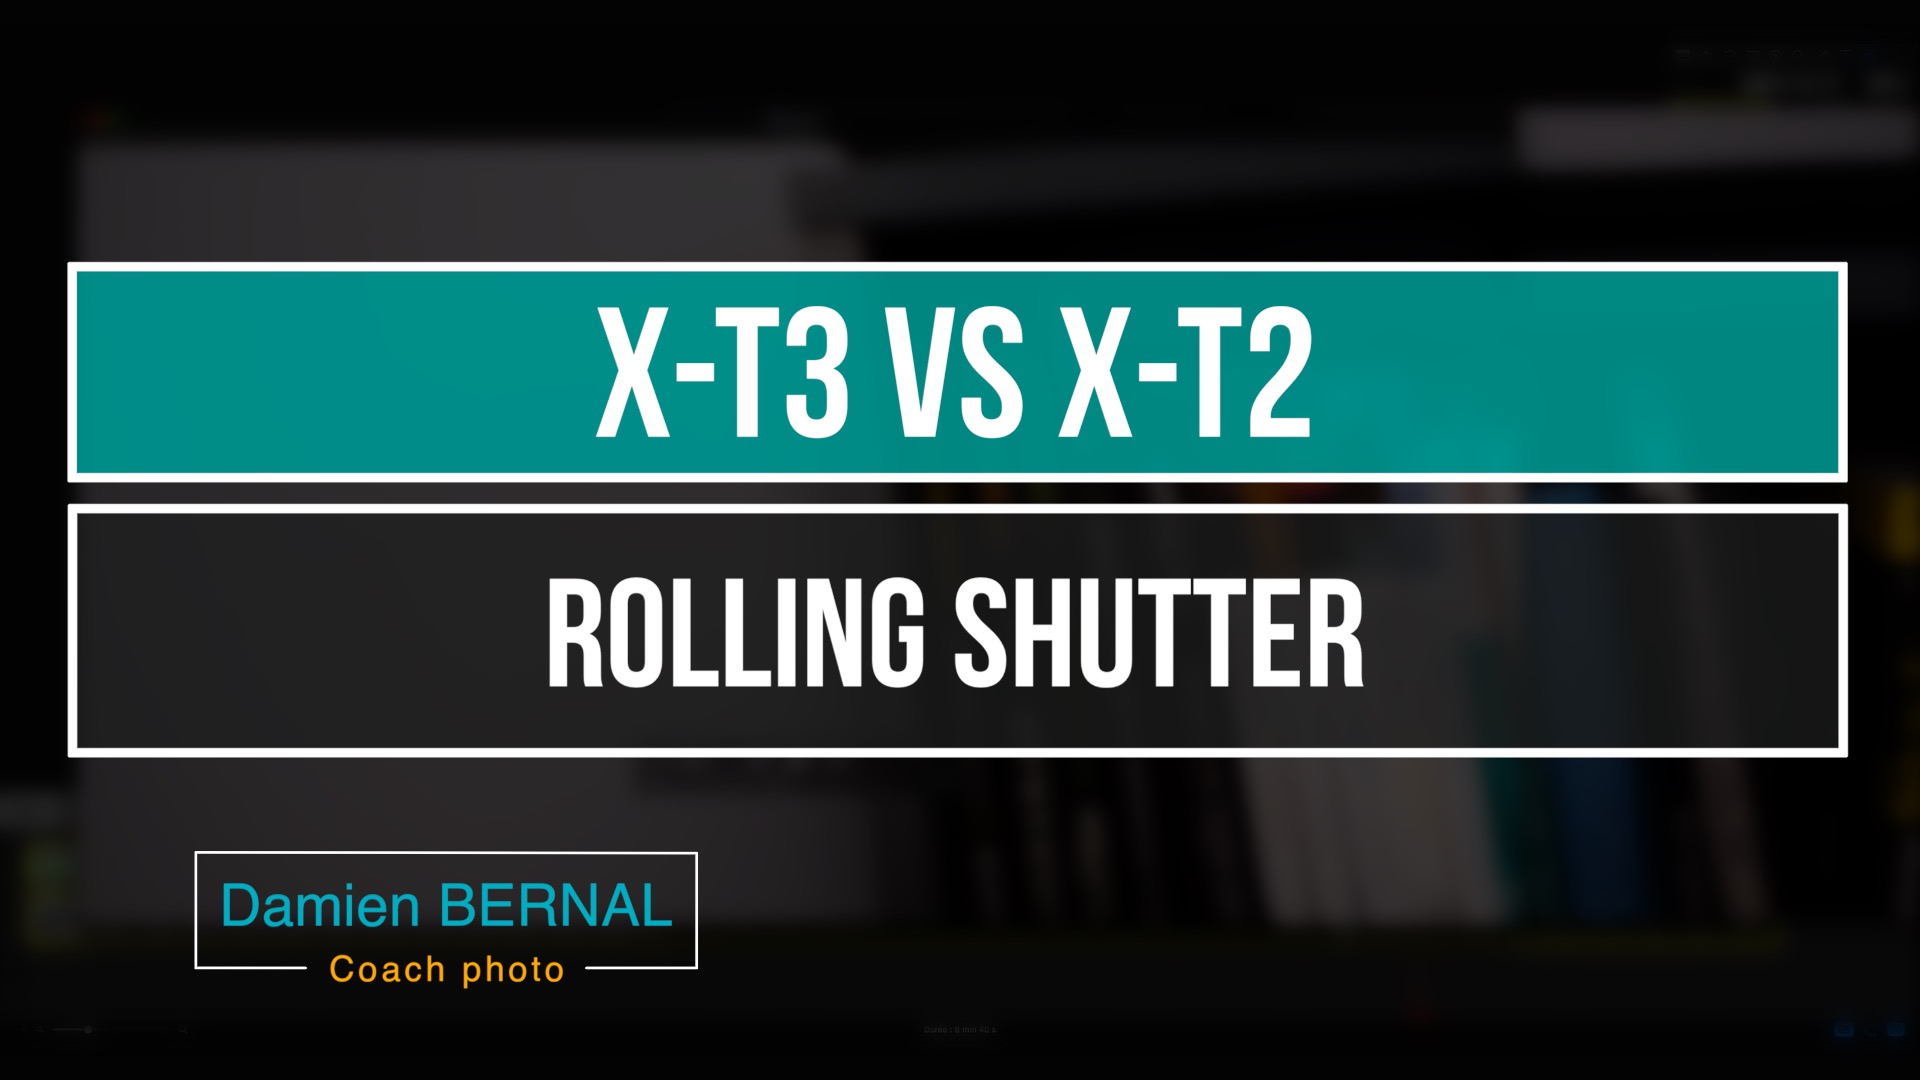 Rolling shutter X-T3